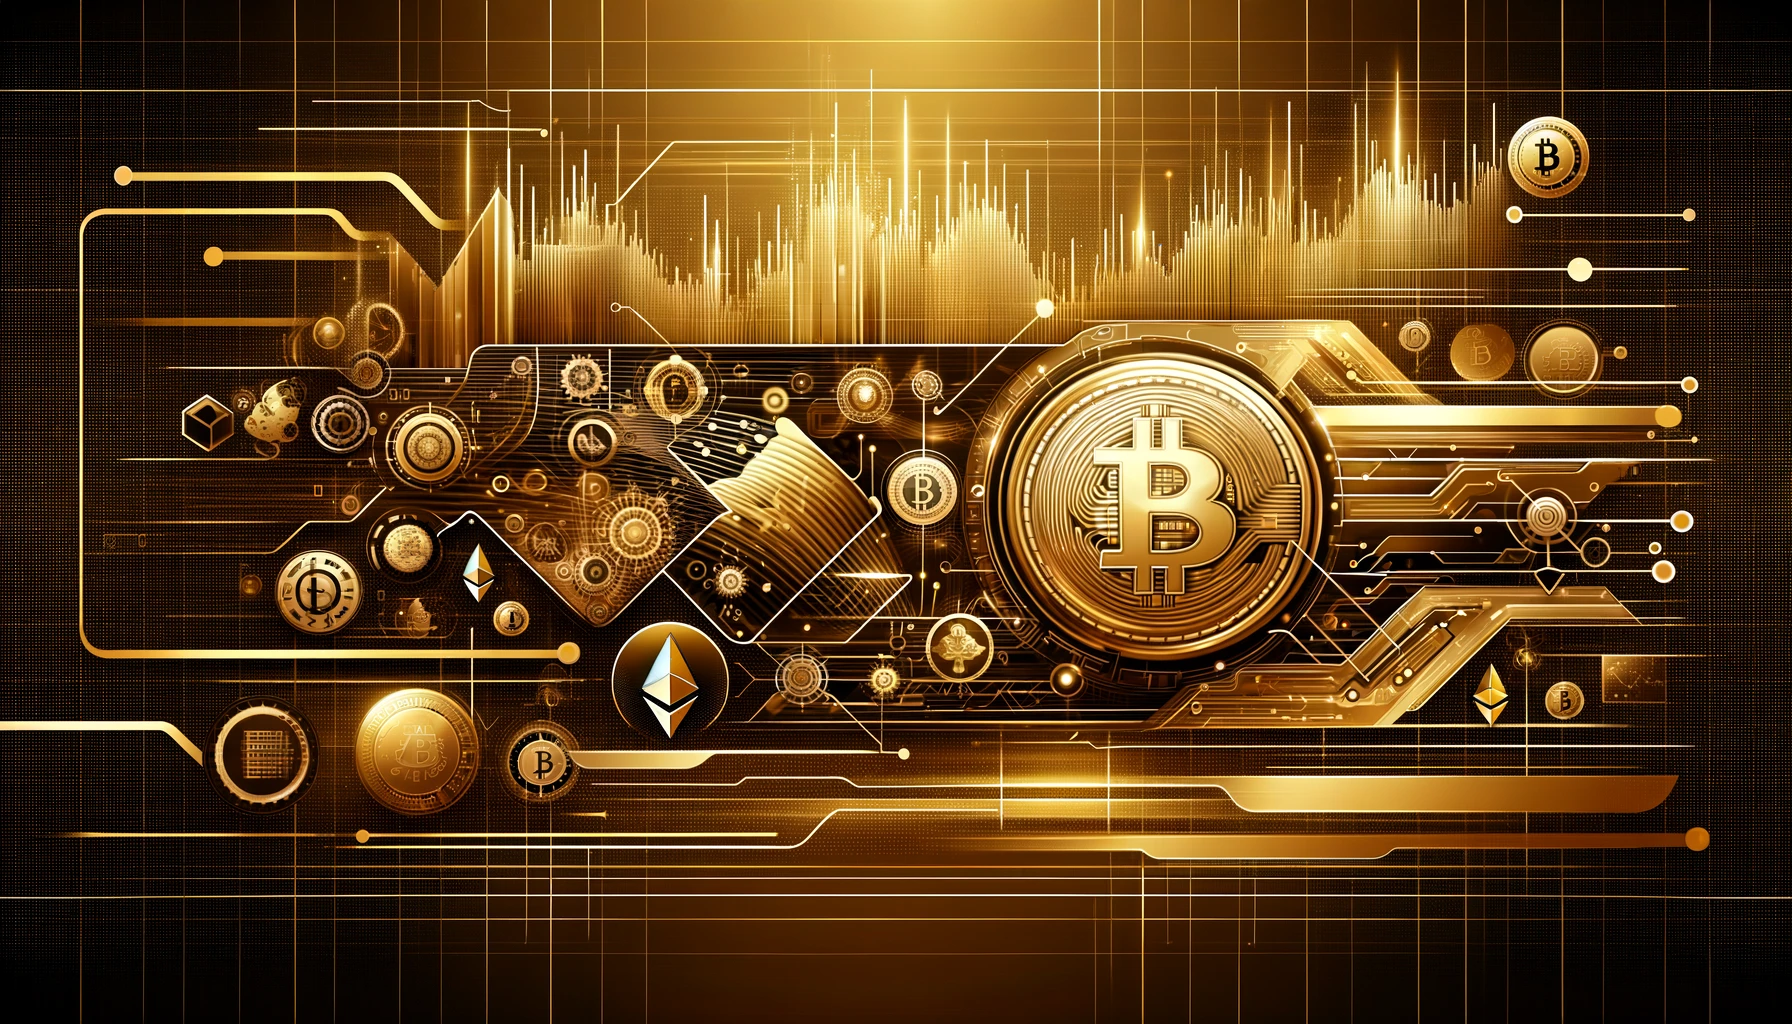 金色の背景に仮想通貨と市場の抽象的なデジタル要素が描かれたアイキャッチ画像